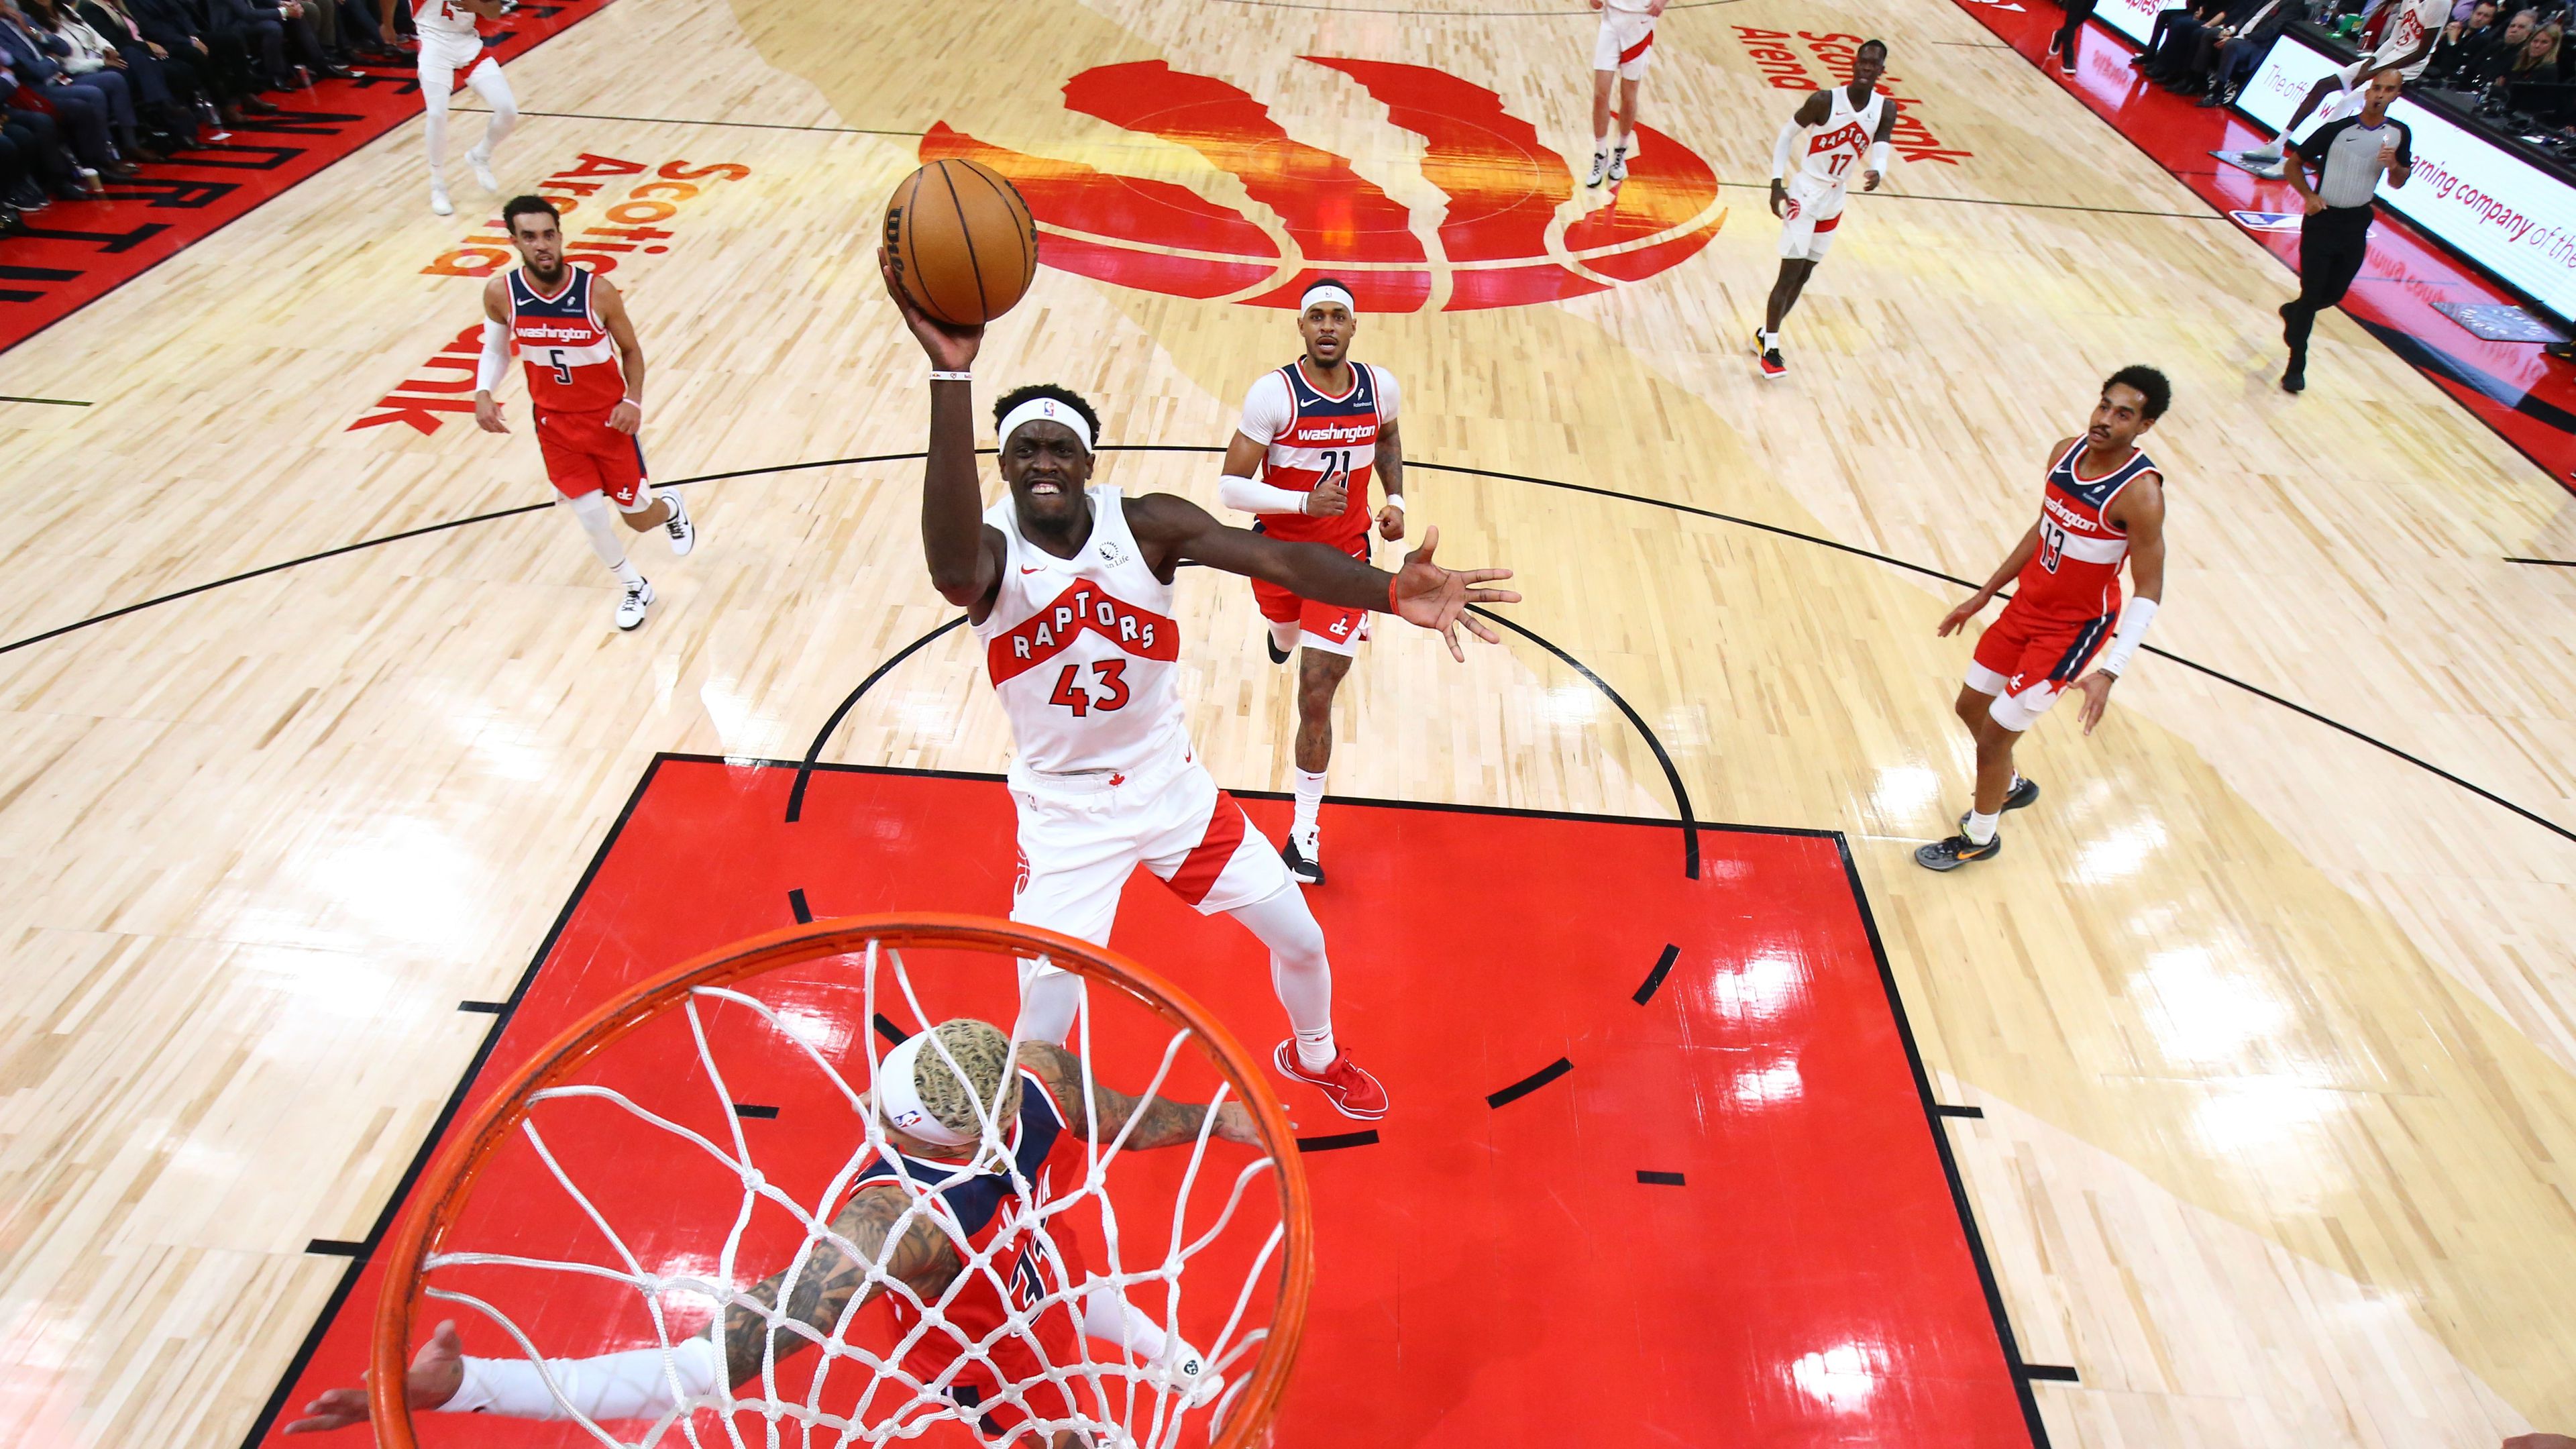 Huszonhárom pontos hátrányból fordított a Toronto az NBA-ben